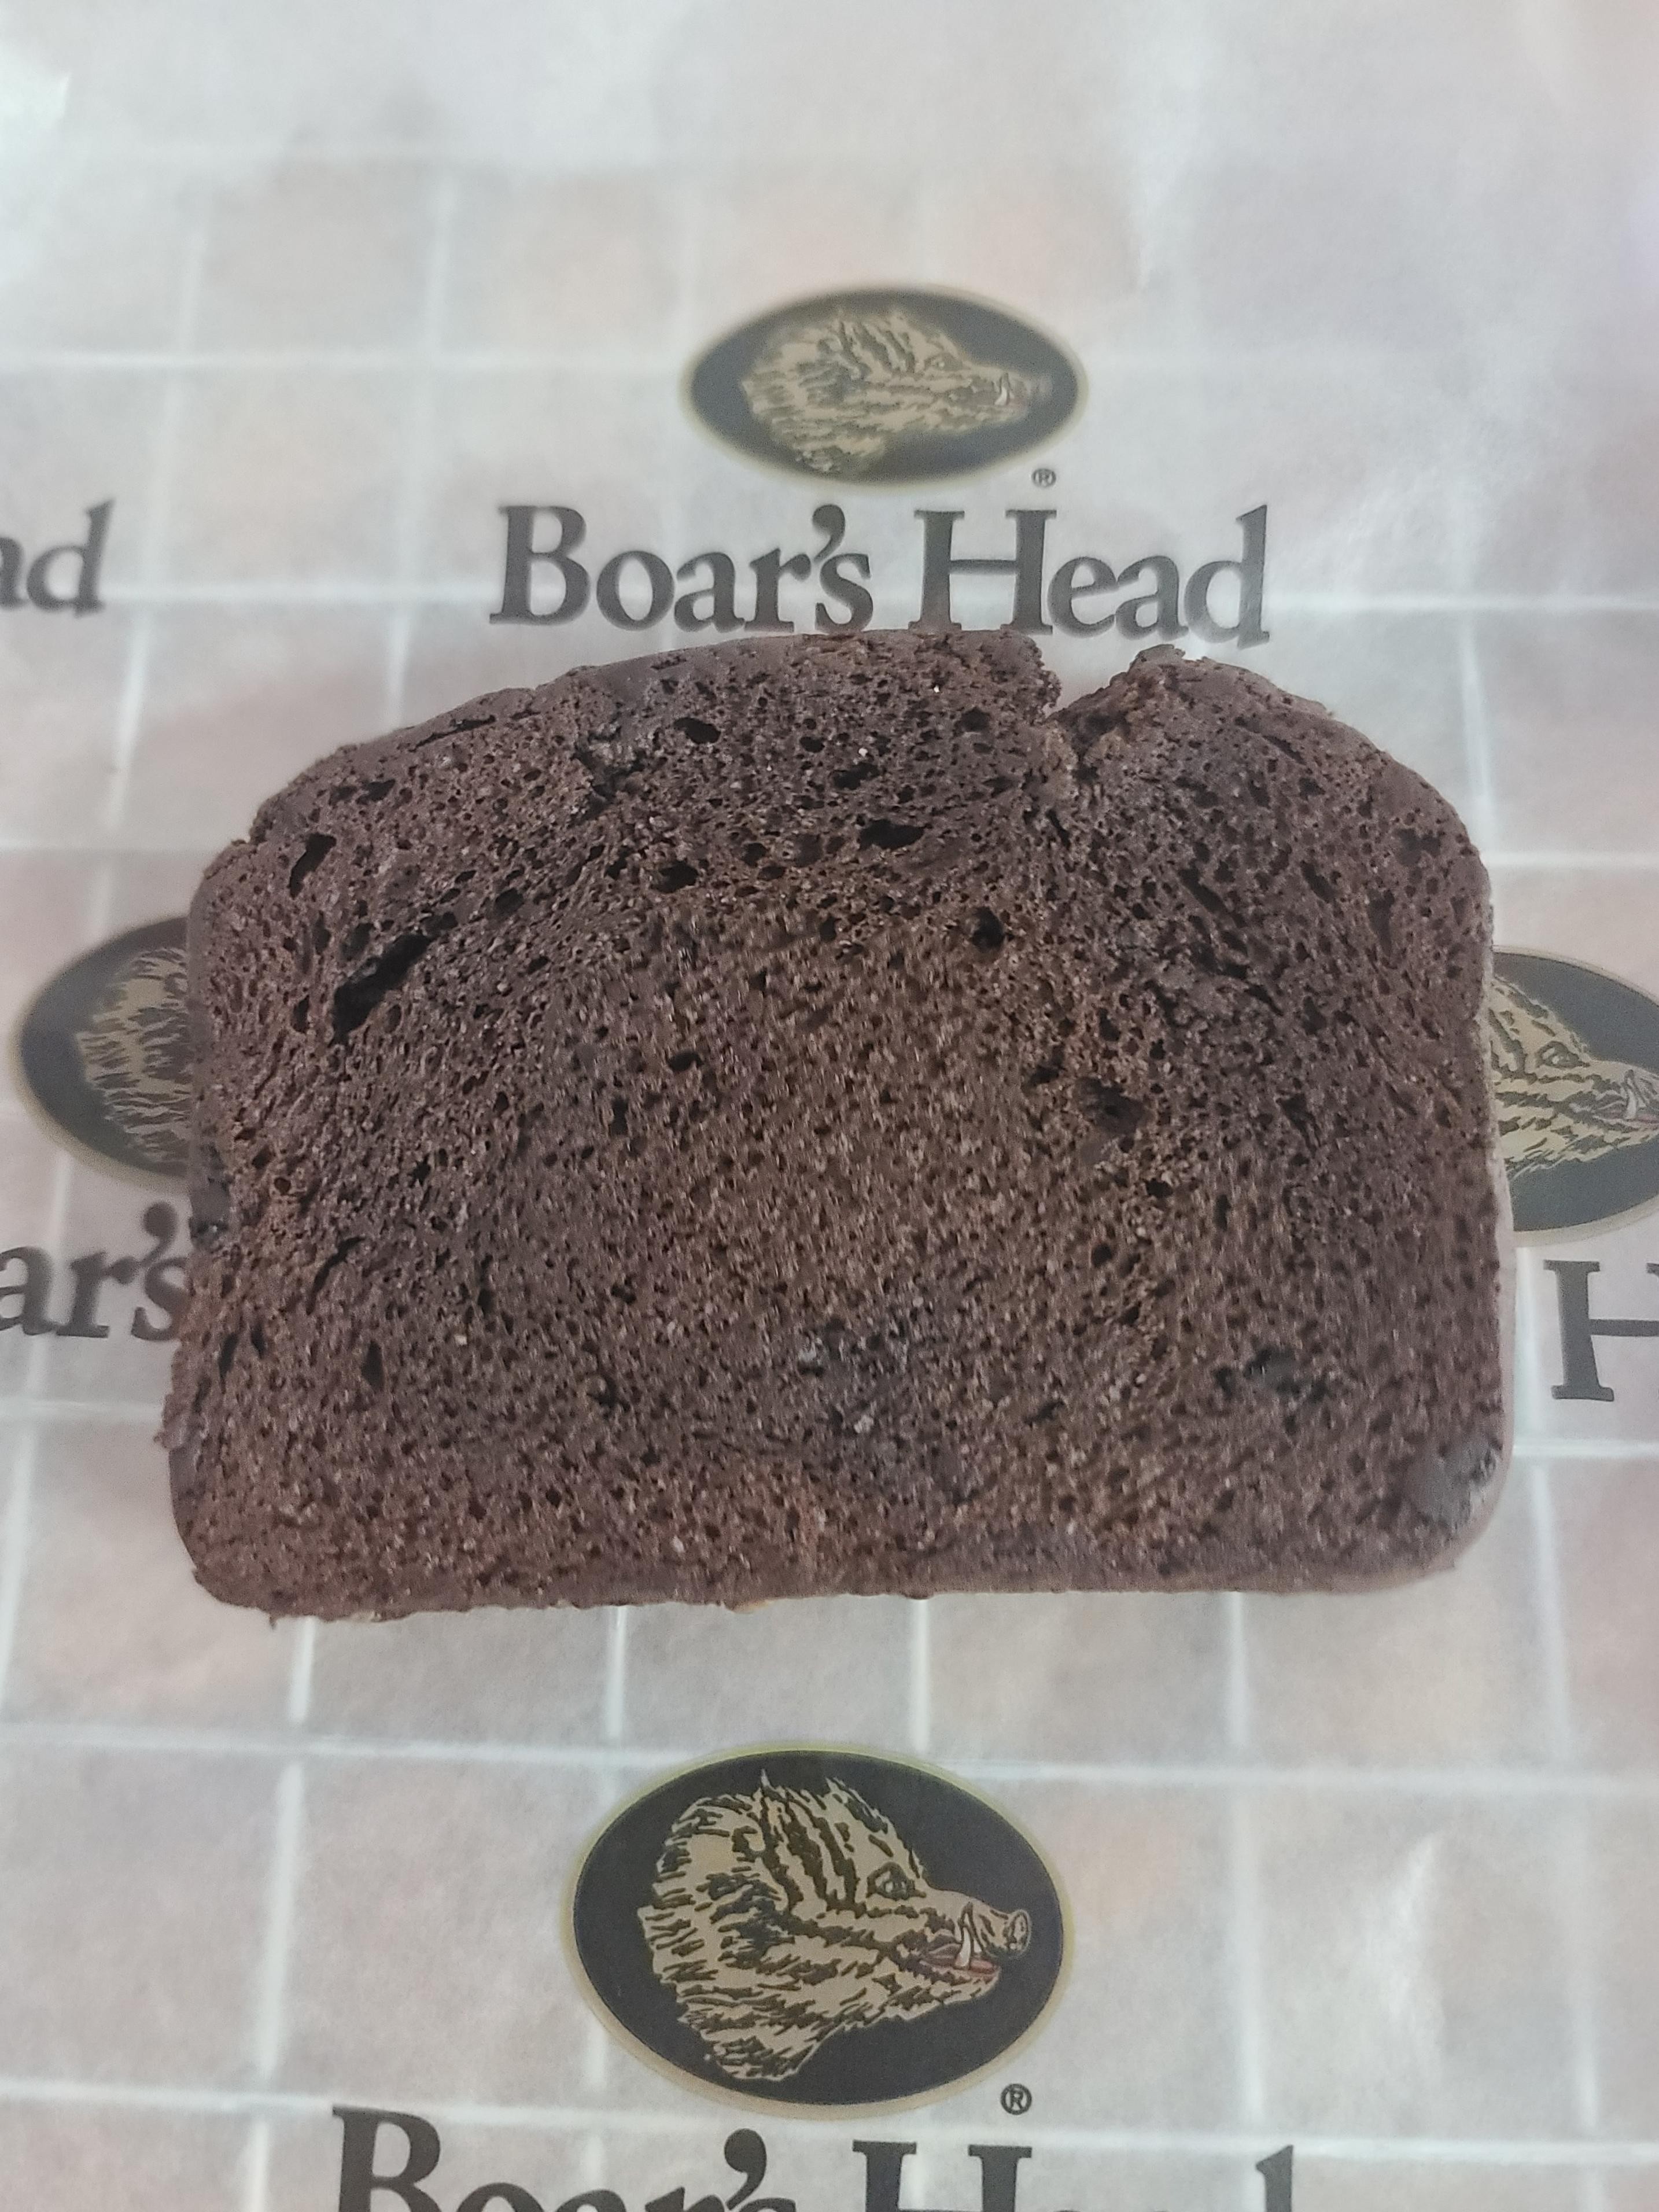 Warm Chocolate Pound Cake